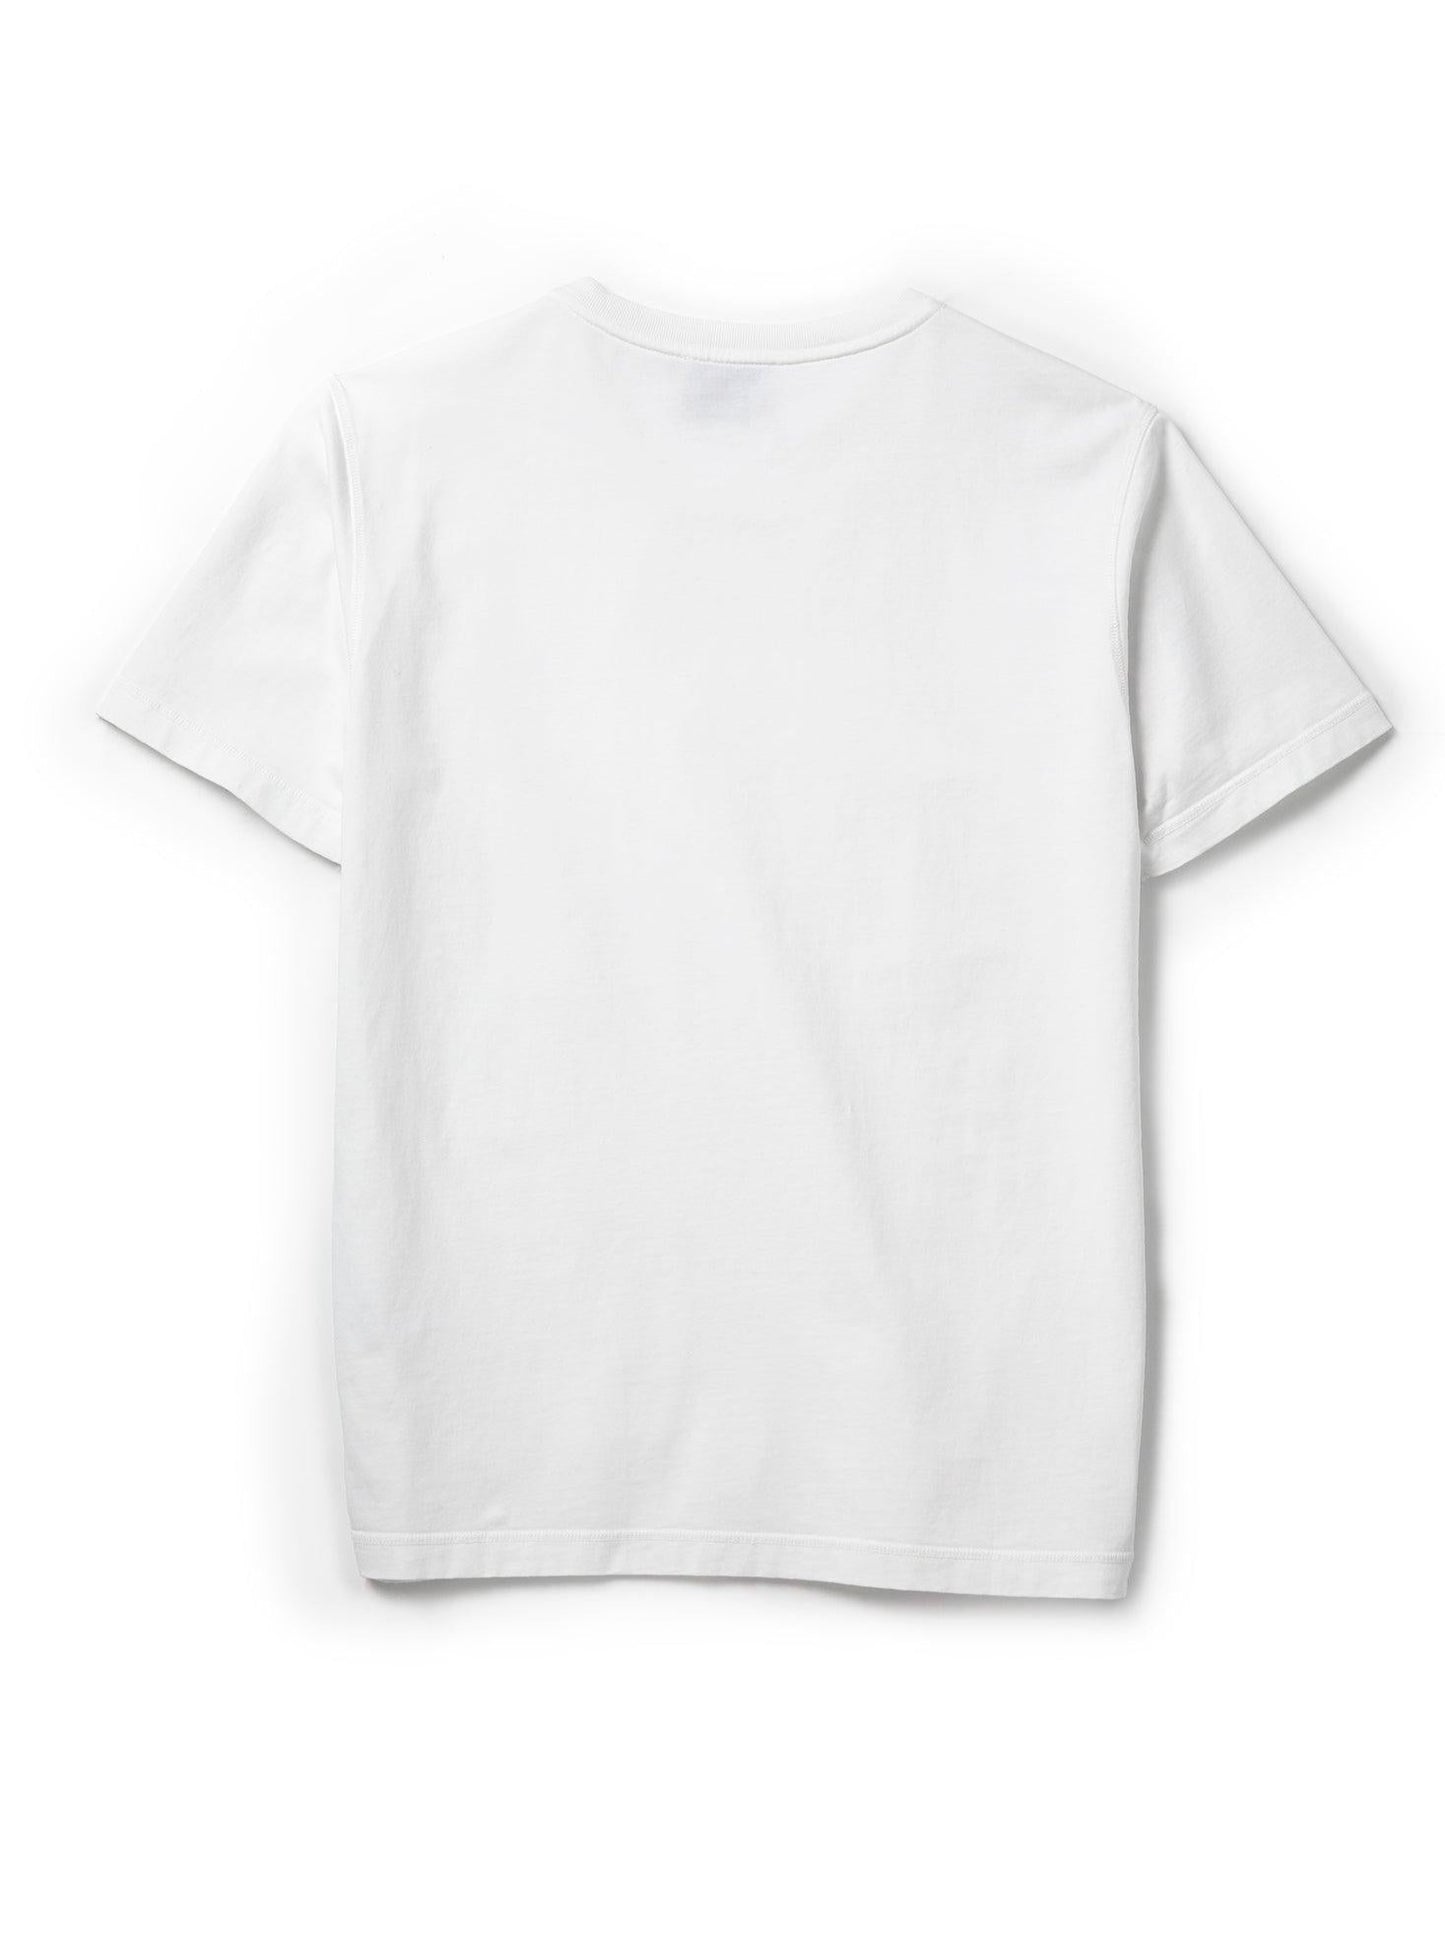 
                  
                    Men's ORILABO for UKRAINE Short Sleeve T-shirt - White - ORILABO Project
                  
                